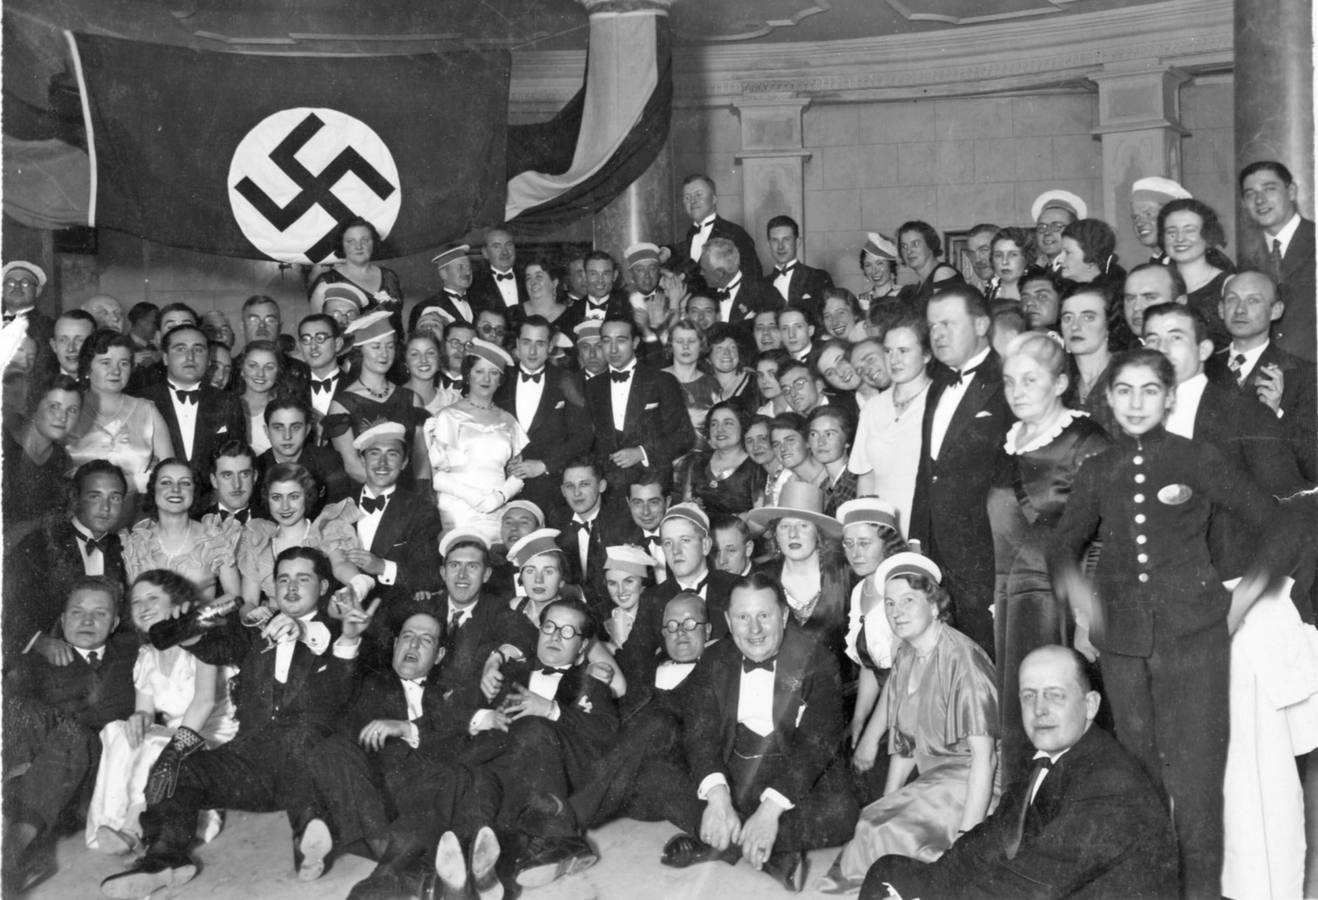 Fiesta alemana. Con la cruz gamada visible, la colonia alemana celebró el año nuevo en Sevilla en 1933